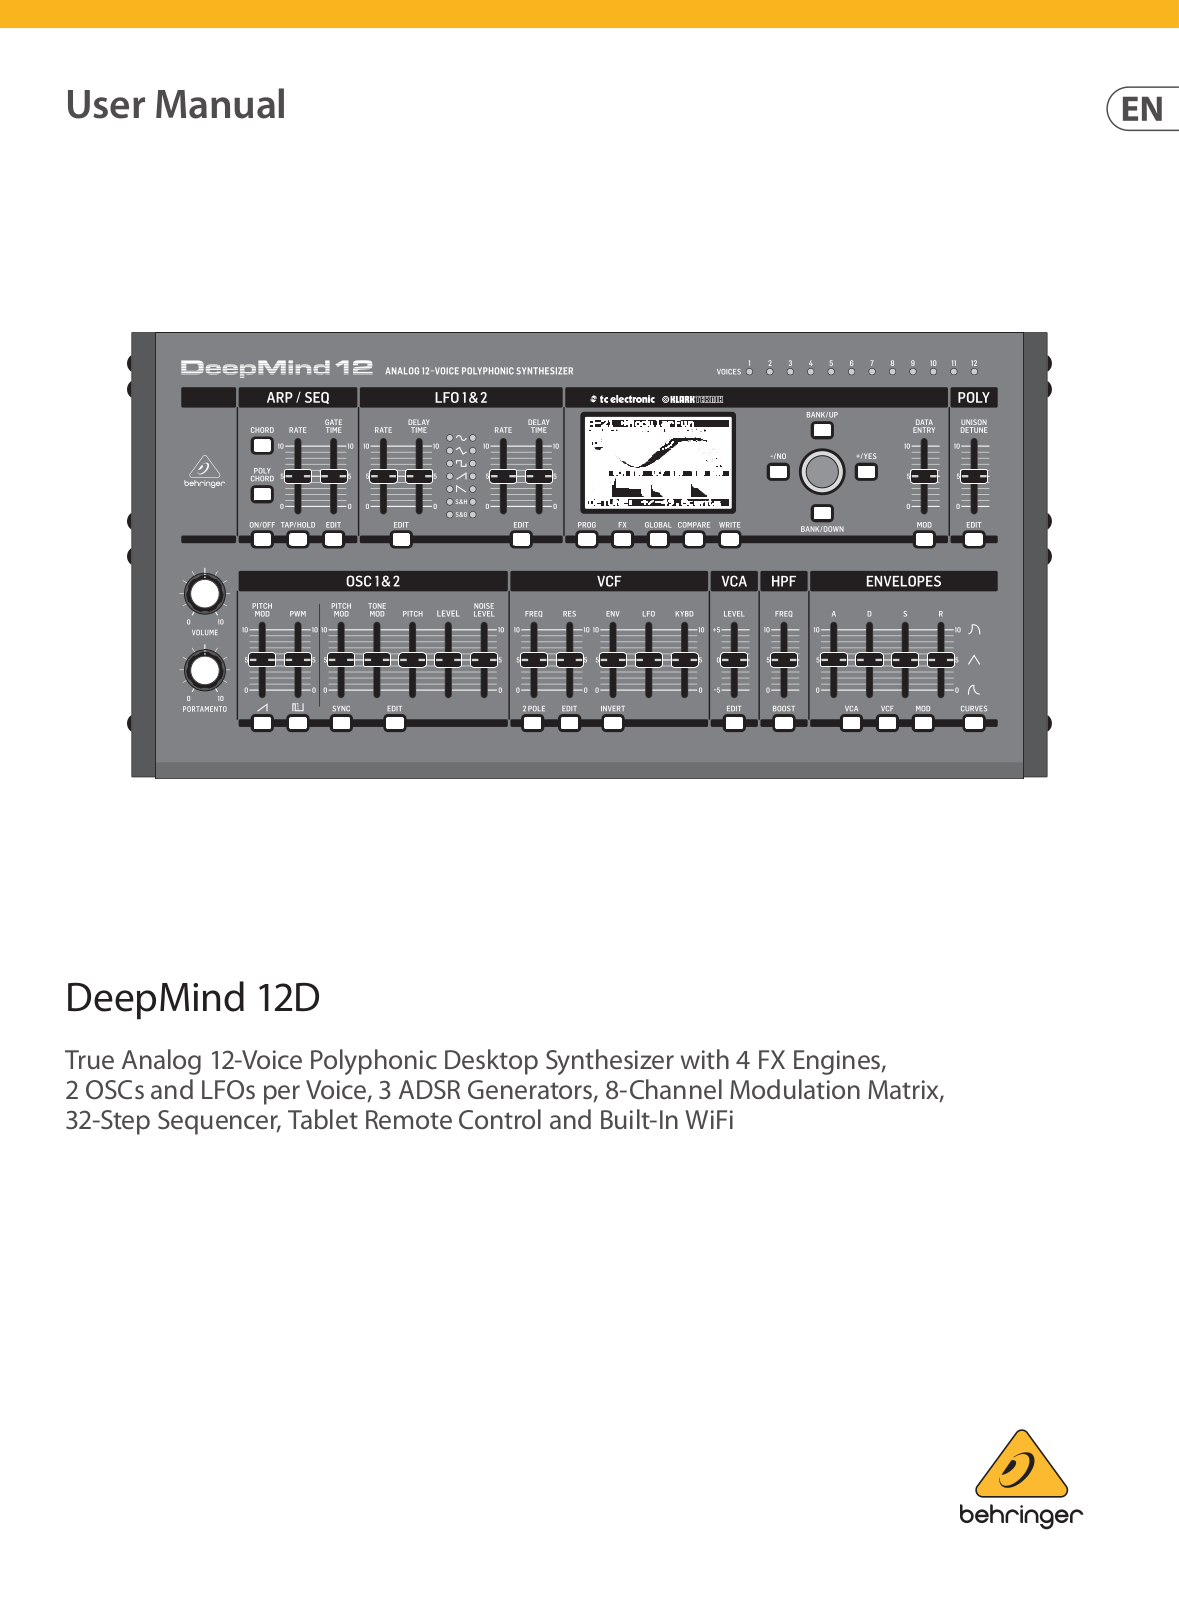 Behringer Deepmind 12D User Manual